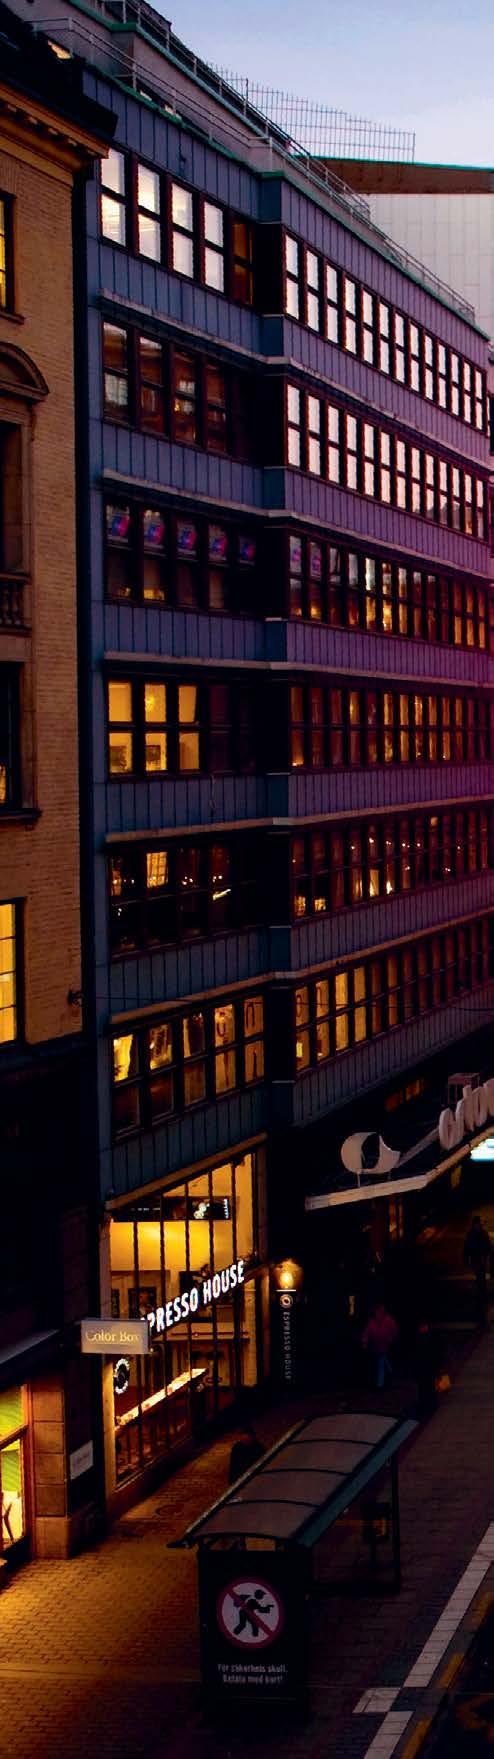 Översiktsplan för Stockholm Godkännandehandling enligt stadsbyggnadsnämndens beslut På Norrmalm ligger City som är regionens centrum och Sveriges ekonomiska, politiska och kulturella nav Fördjupning